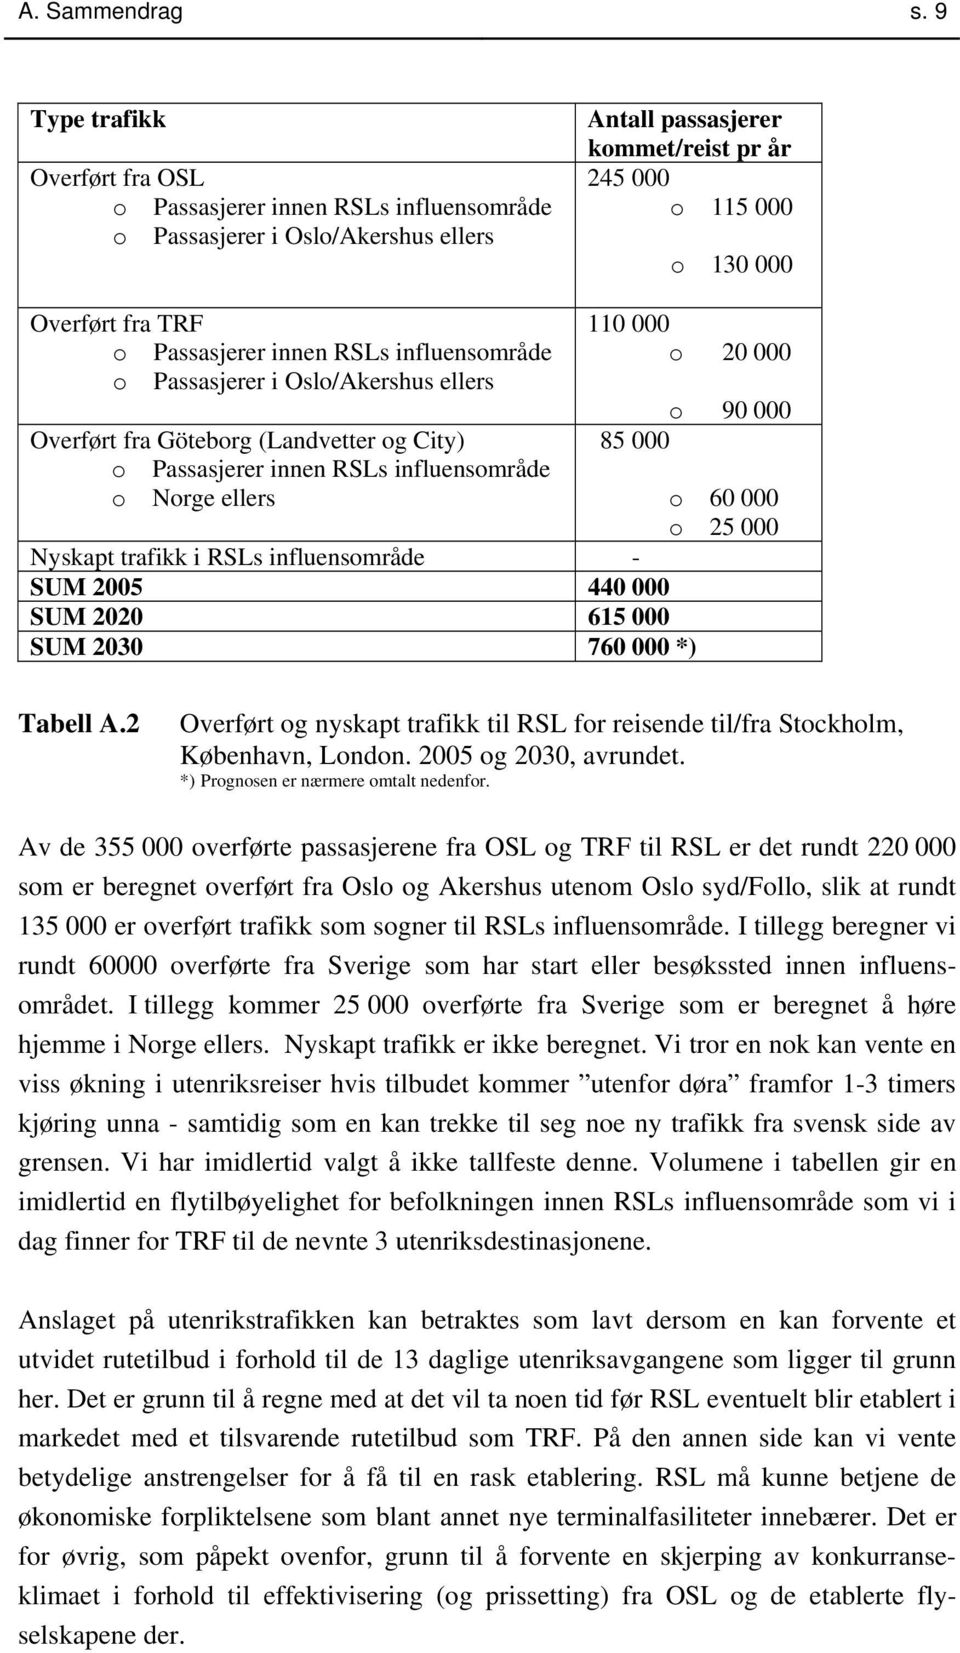 Passasjerer innen RSLs influensområde o Passasjerer i Oslo/Akershus ellers Overført fra Göteborg (Landvetter og City) o Passasjerer innen RSLs influensområde o Norge ellers 110 000 o 20 000 o 90 000